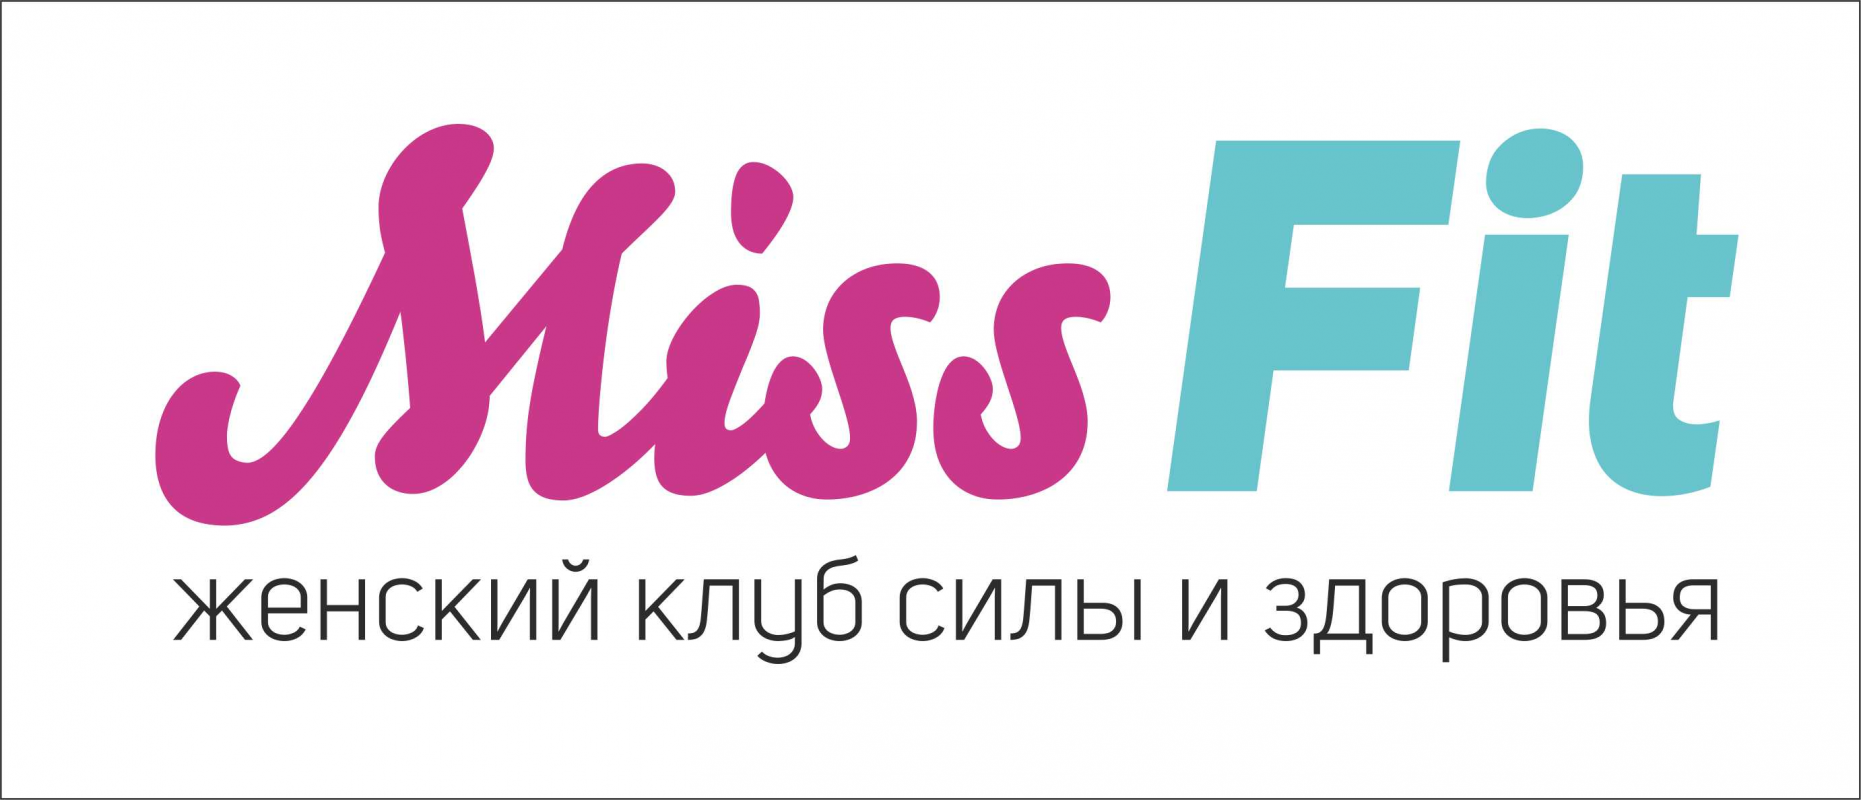 Женский фитнес клуб MissFit: отзывы от сотрудников и партнеров